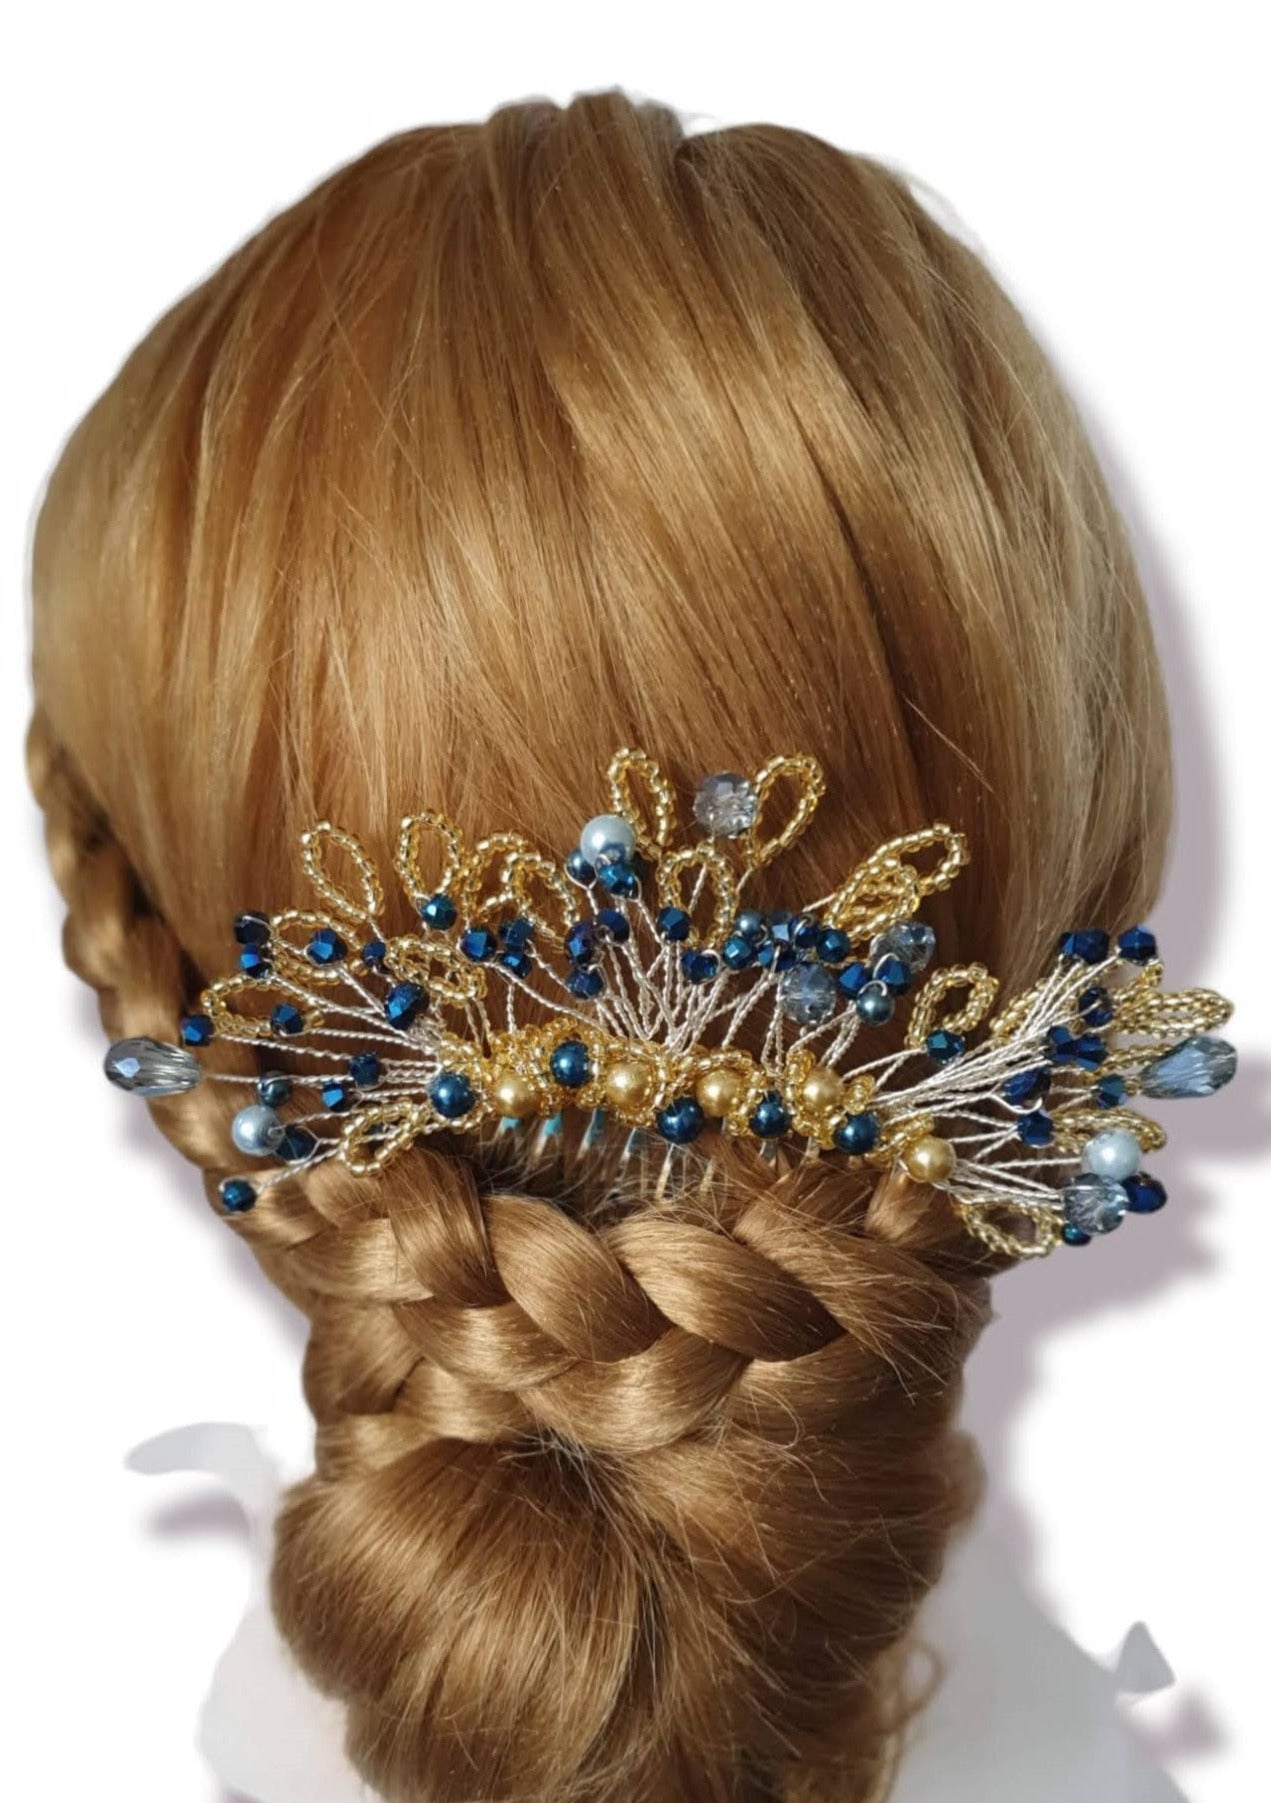 Handgemaakte bruidskam met blauwe parels en druppelstenen - elegant haaraccessoire voor bruiloften en feesten, zilverkleurige metalen kam